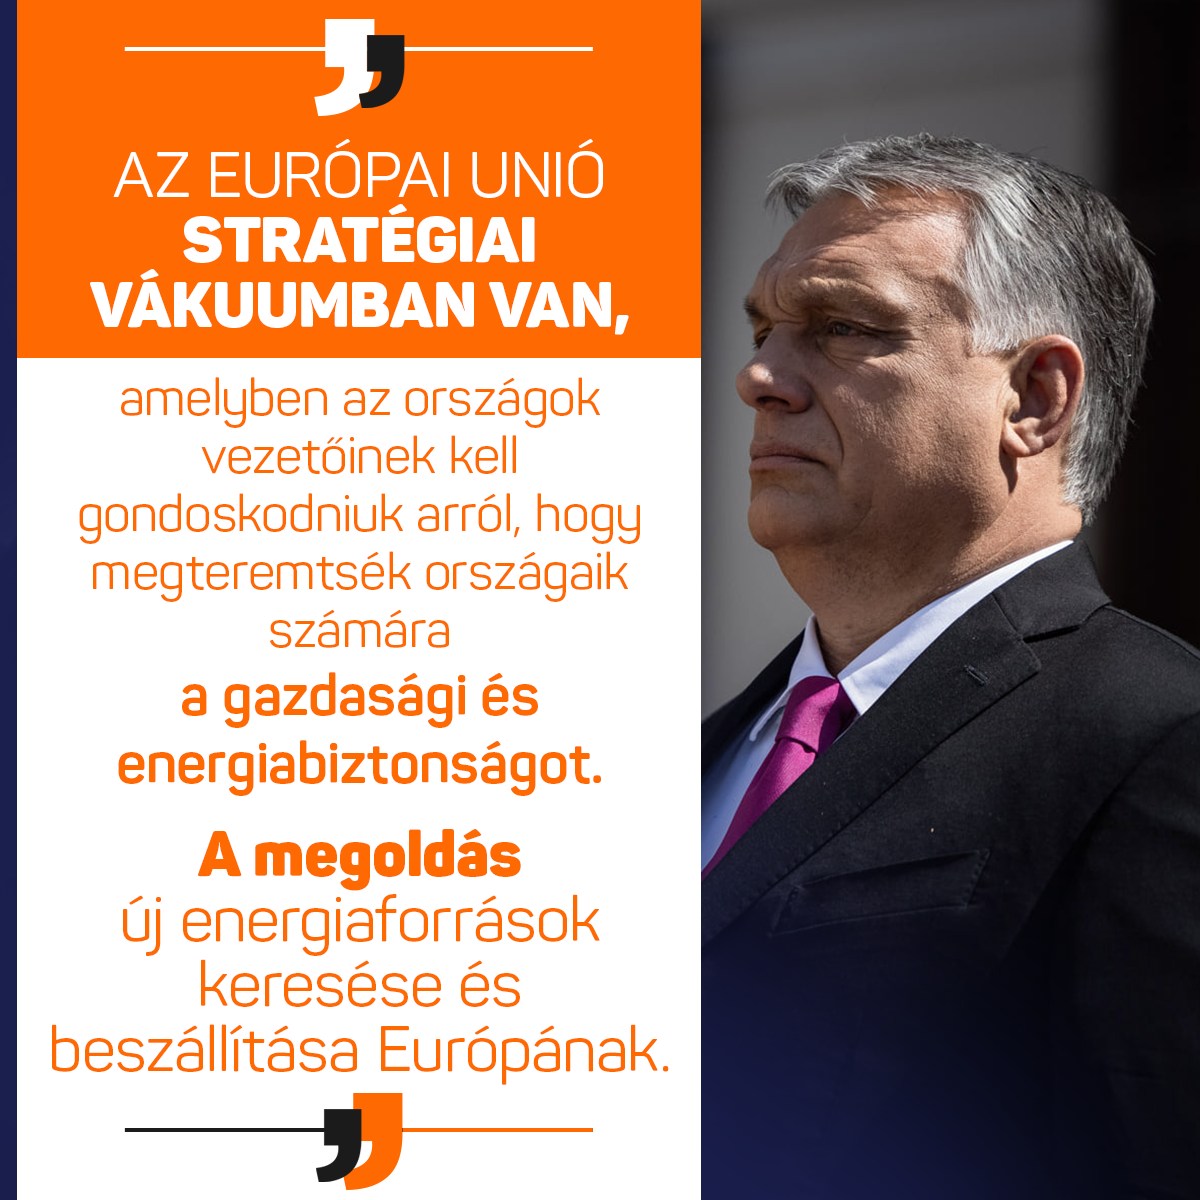 A világon egyedülálló beruházás mellett kötelezte el magát partnereivel Magyarország: a világ leghosszabb tenger alatti villamosenergia-vezetékének megépítésére készülünk – jelentette ki Orbán Viktor Bukarestben, mielőtt aláírták az Azerbajdzsánból Georgián és Románián keresztül Magyarországra áramot szállító villamosenergia-hálózatról szóló szerződést.